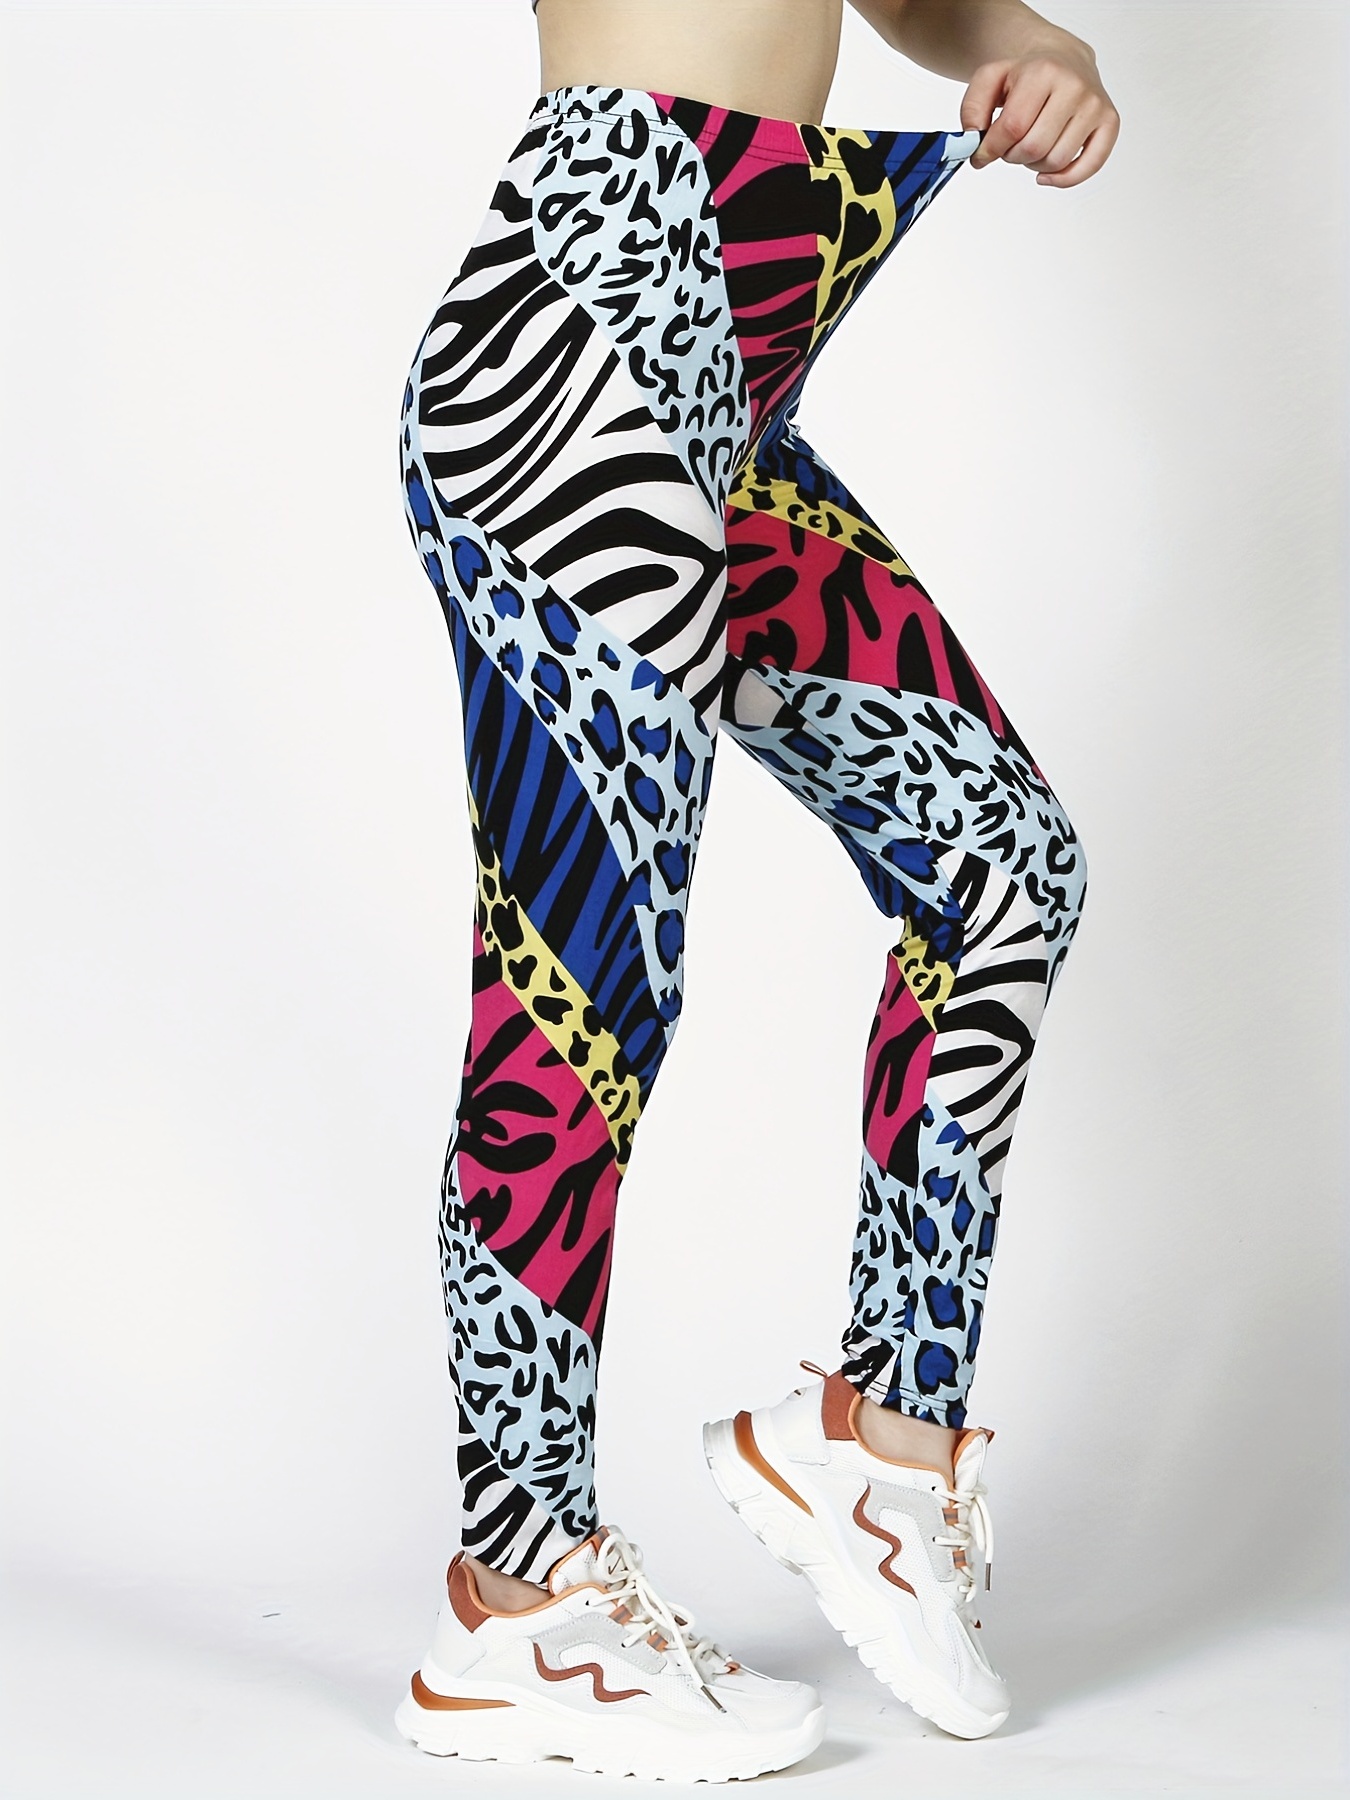 Tiger Stripe Animal Print Neon Spandex Leggings Vintage 80s inspired  Costume S 